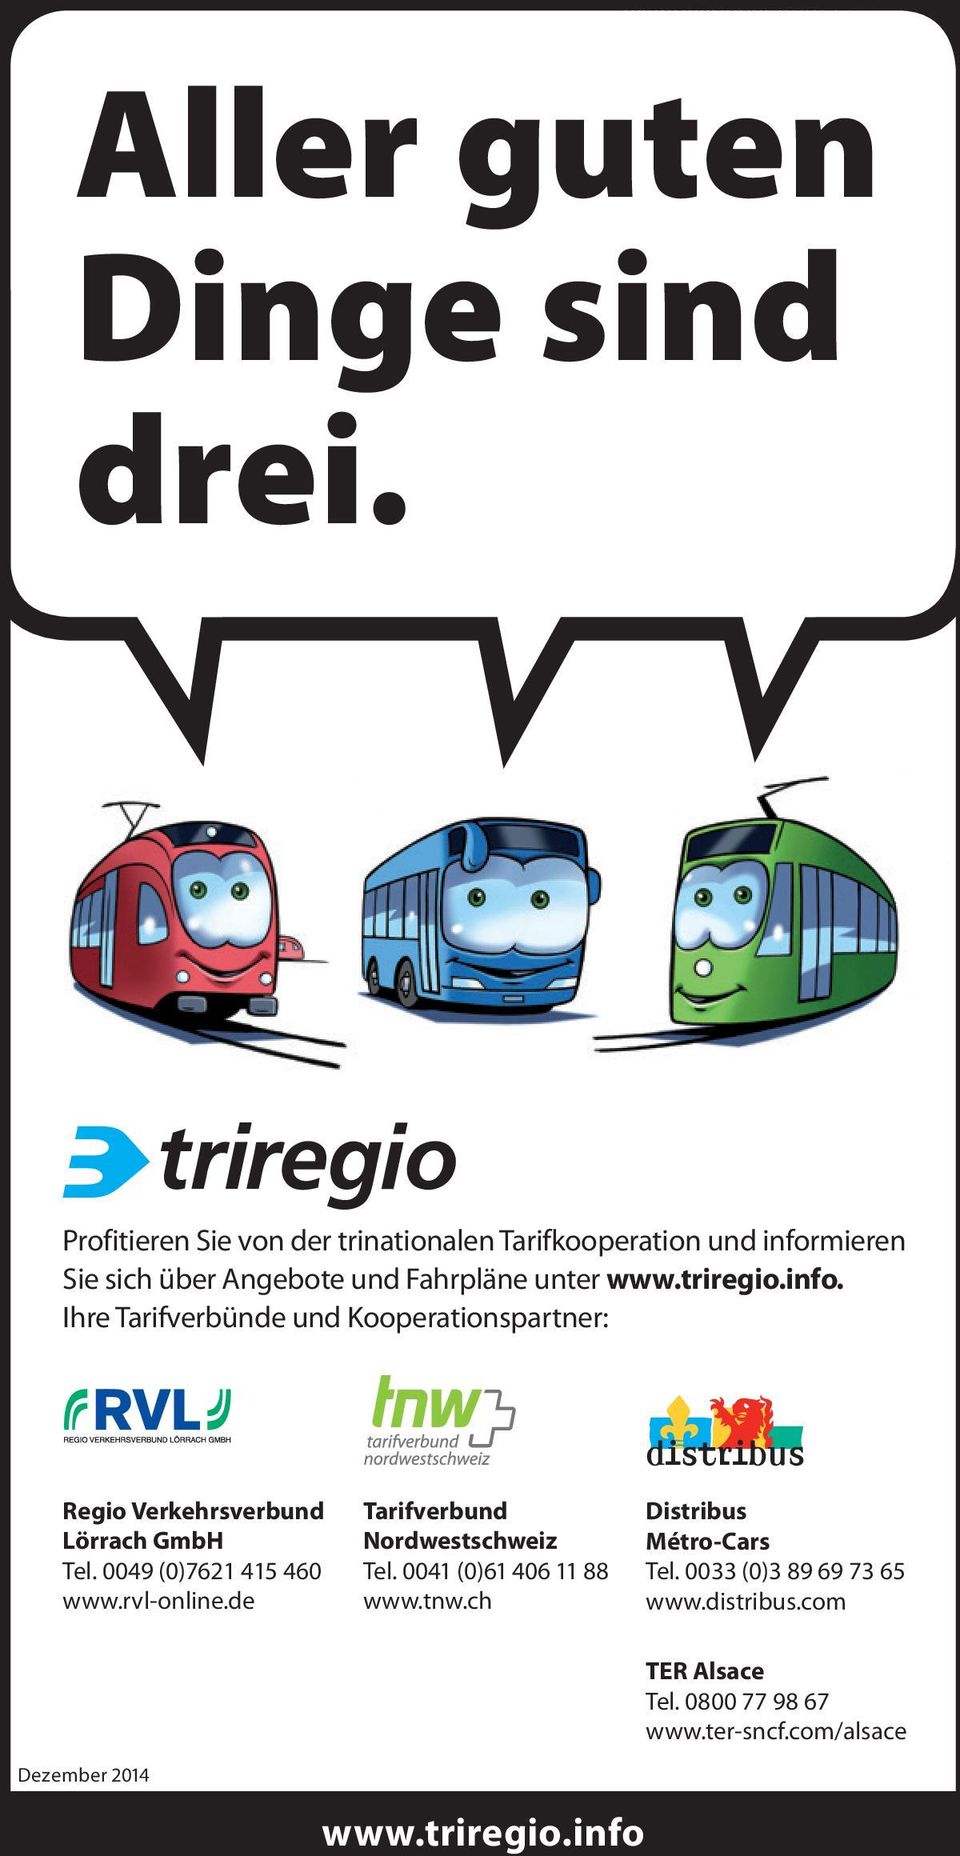 info. Ihre Tarifverbünde und Kooperationspartner: Regio Verkehrsverbund Lörrach GmbH Tel. 0049 (0)7621 415 460 www.rvl-online.